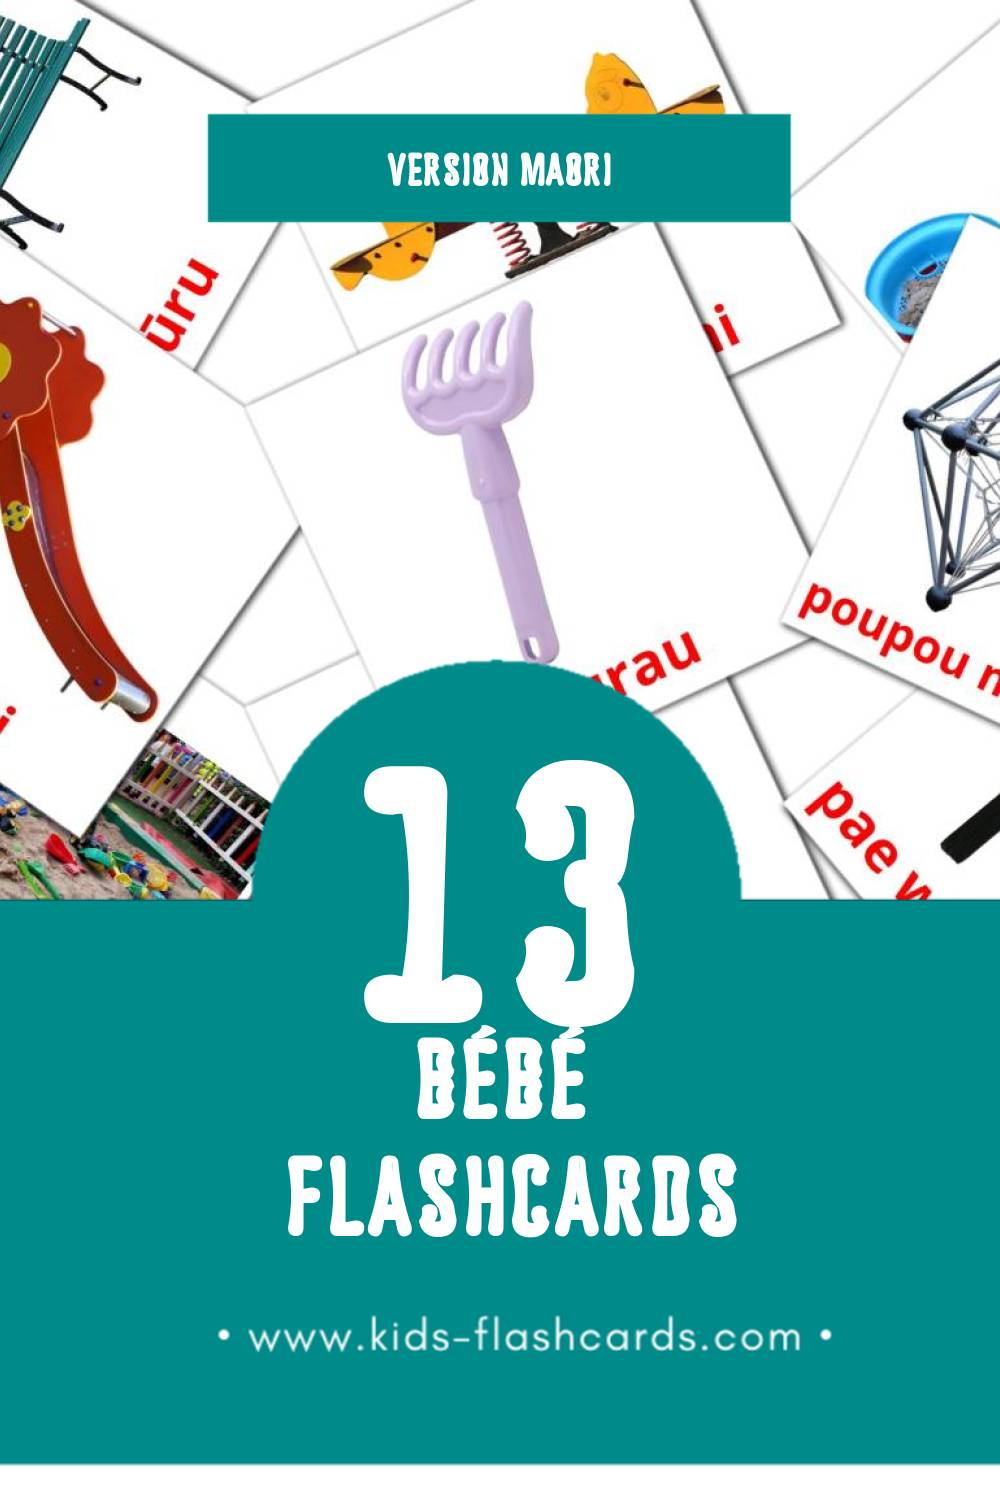 Flashcards Visual Pēpē pour les tout-petits (13 cartes en Maori)